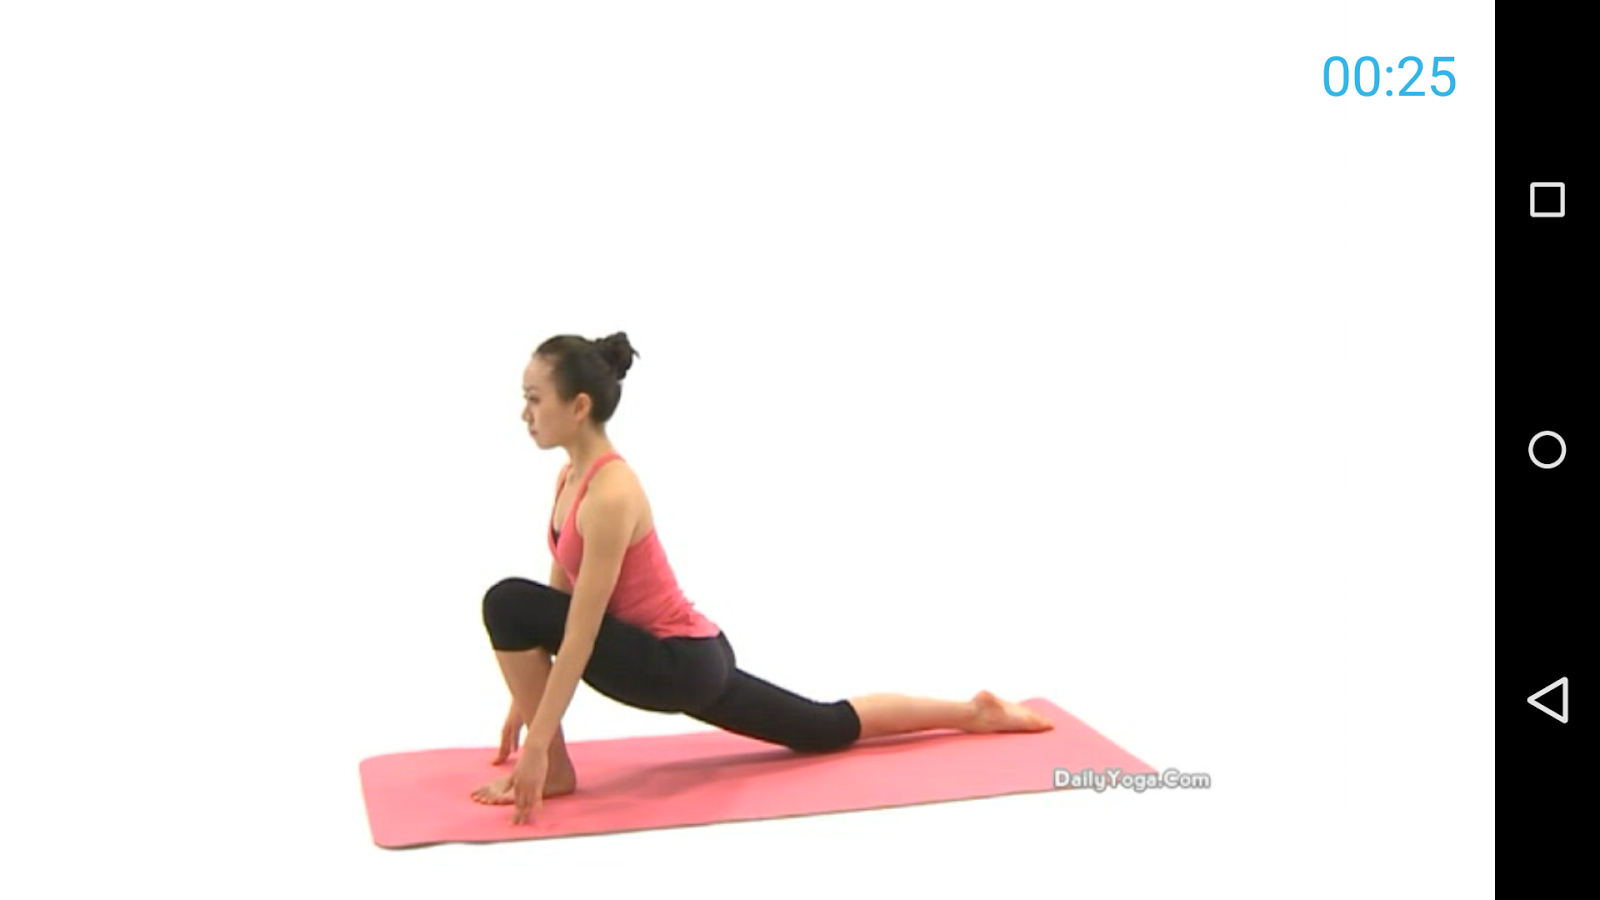 Yoga pluspng.com